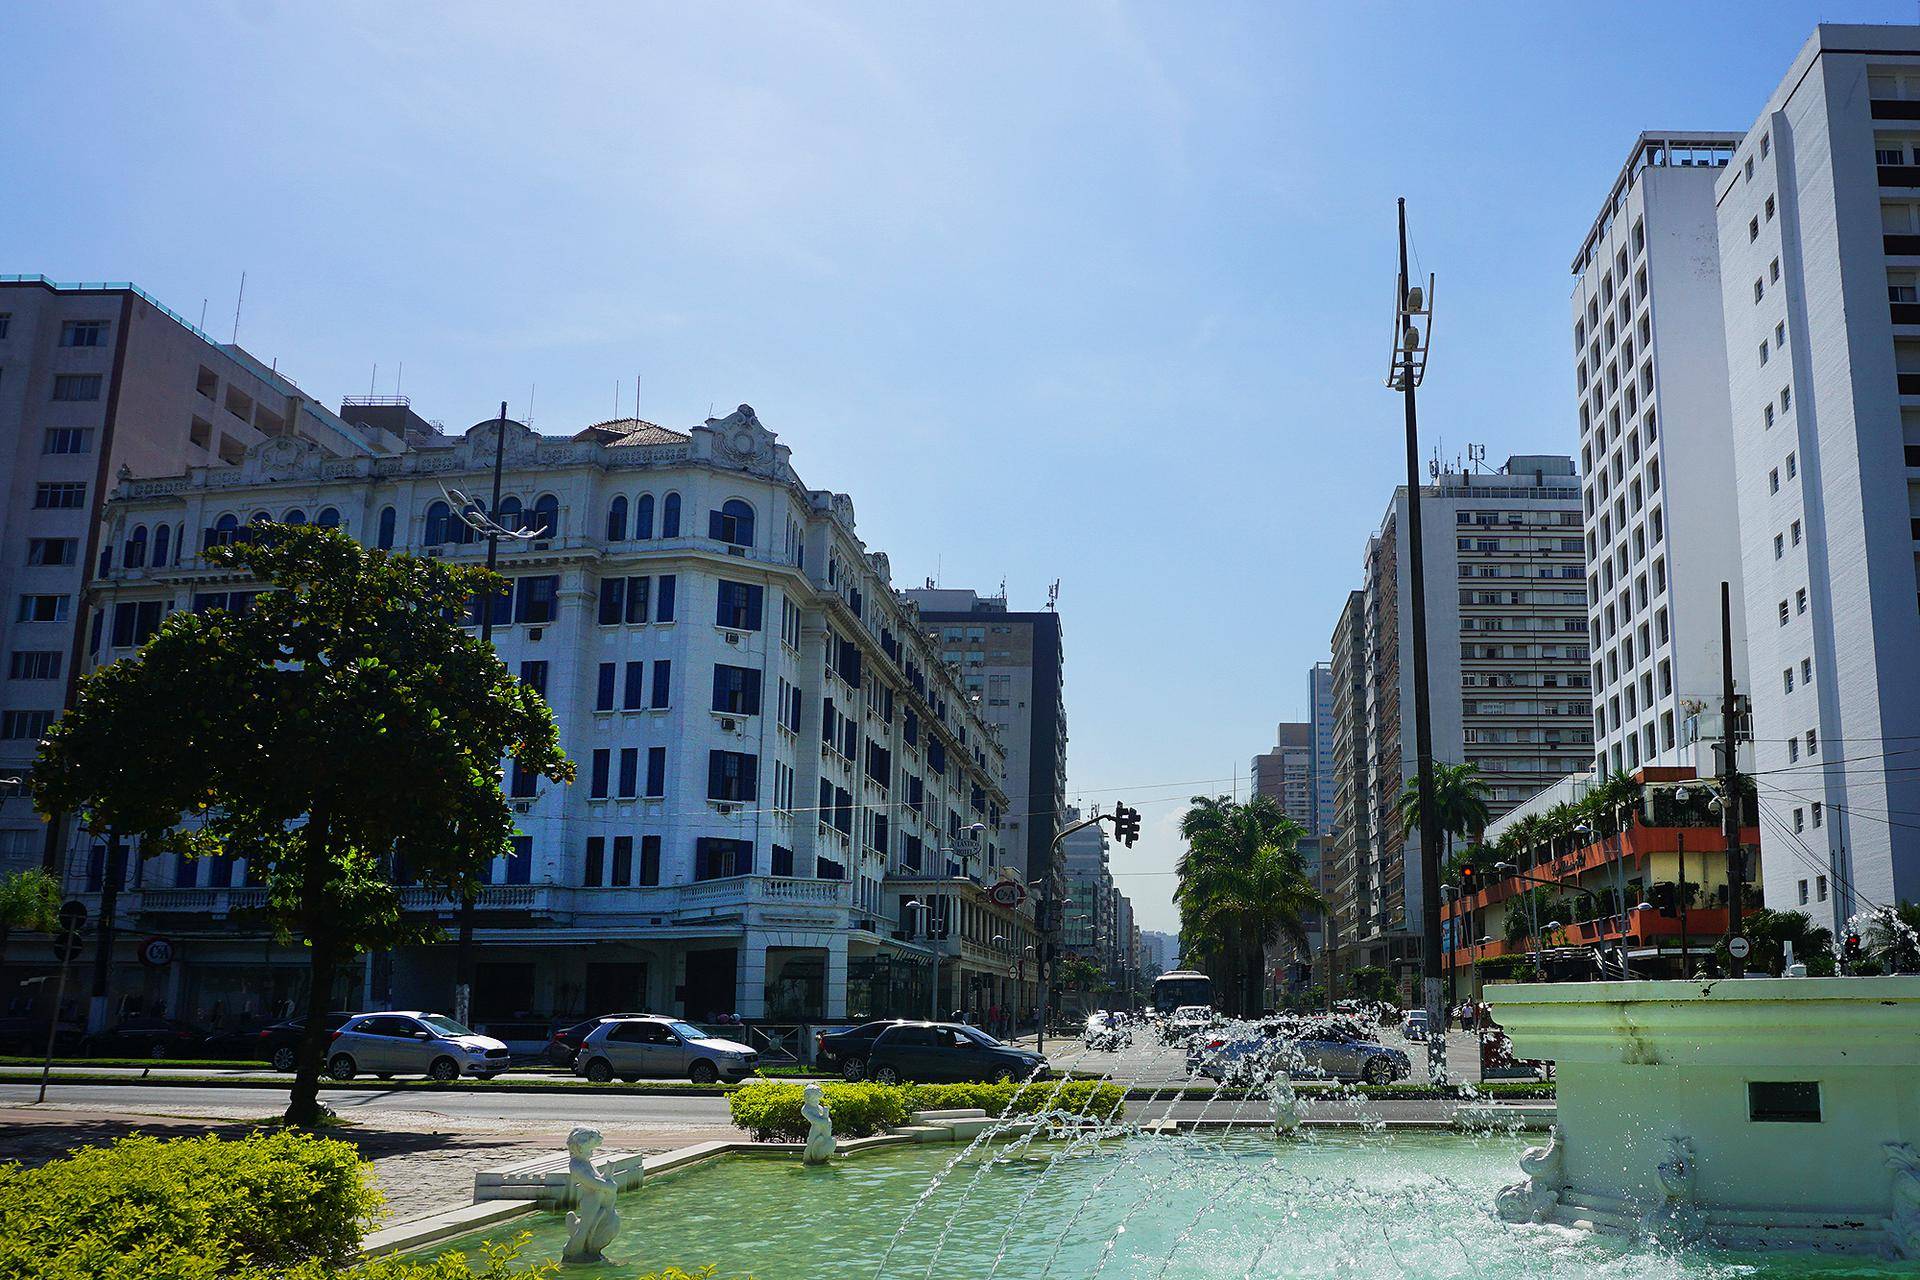 Imagem do Gonzaga com dois hotéis ao fundo: Atlântico e Parque Balneário. O Gonzaga tem algumas opções de hospedagem barata